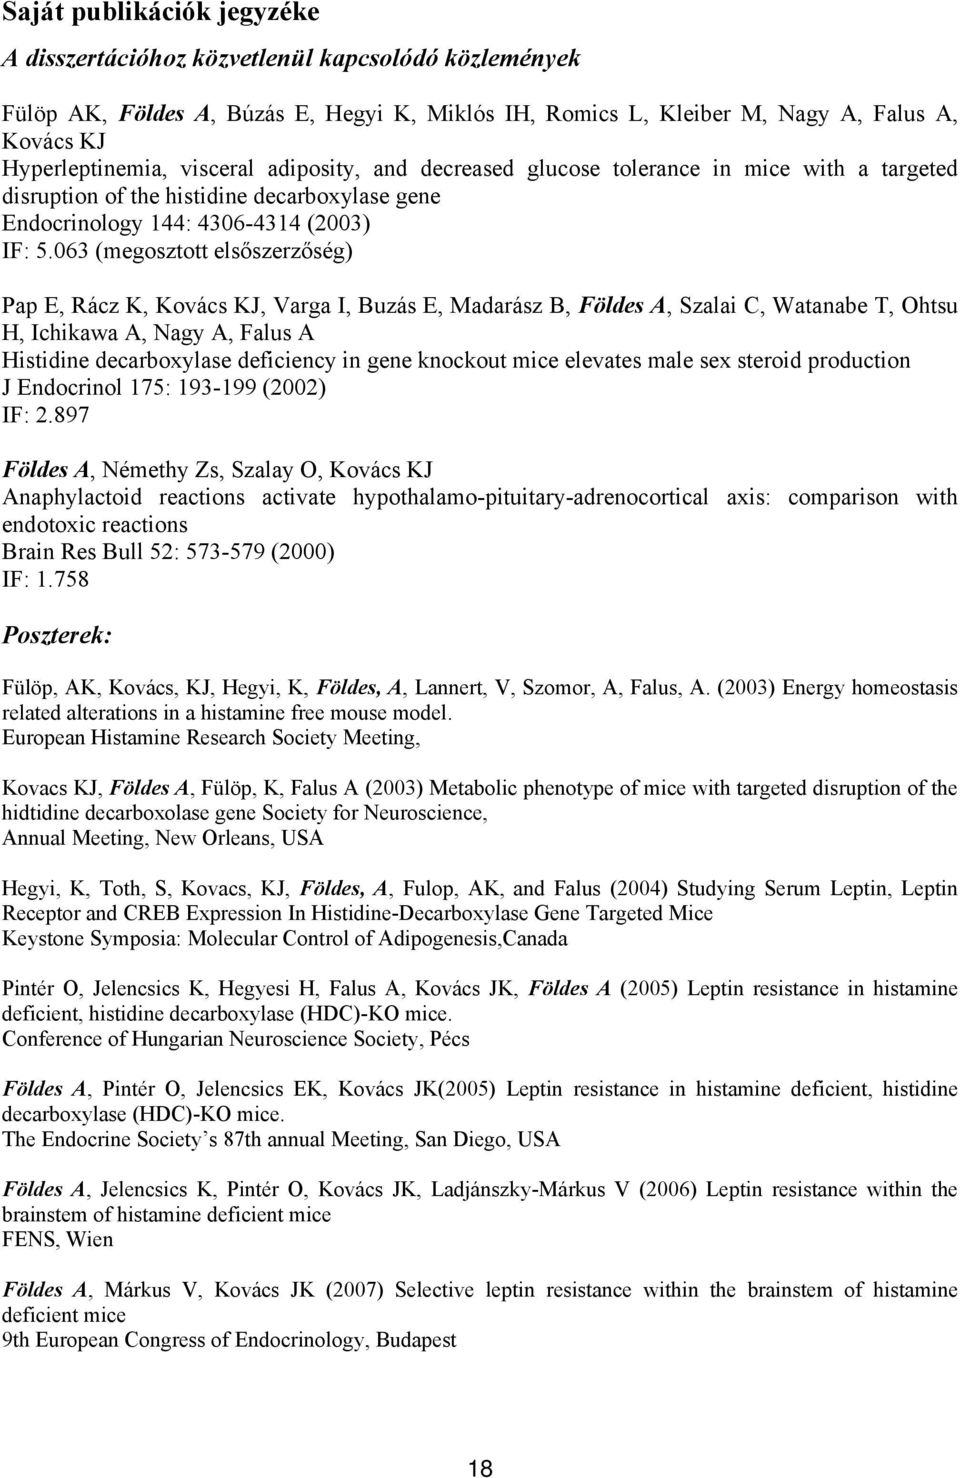 063 (megosztott elsőszerzőség) Pap E, Rácz K, Kovács KJ, Varga I, Buzás E, Madarász B, Földes A, Szalai C, Watanabe T, Ohtsu H, Ichikawa A, Nagy A, Falus A Histidine decarboxylase deficiency in gene